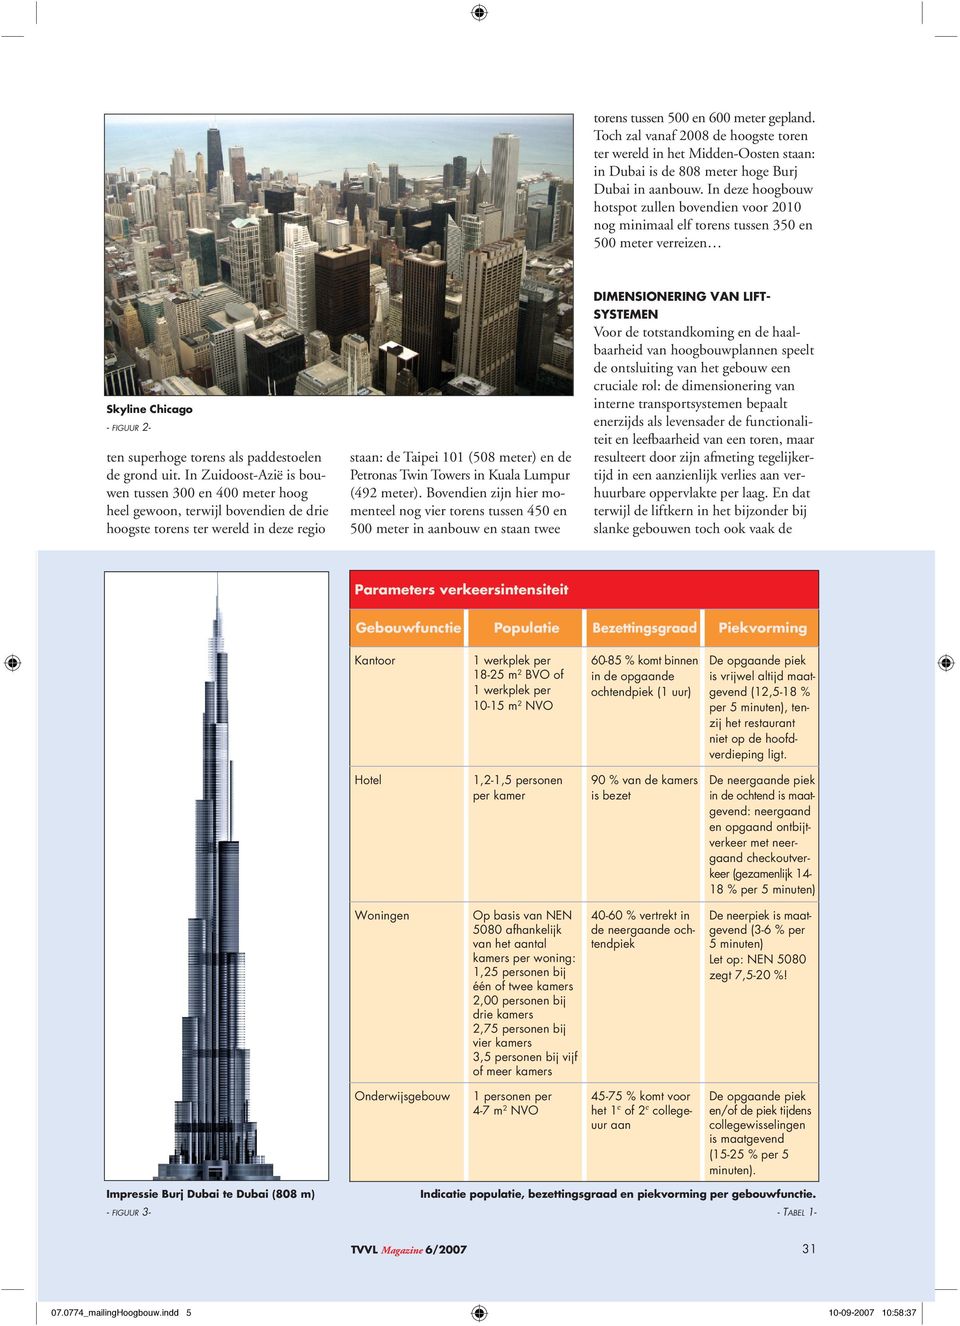 In Zuidoost-Azië is bouwen tussen 300 en 400 meter hoog heel gewoon, terwijl bovendien de drie hoogste torens ter wereld in deze regio staan: de Taipei 101 (508 meter) en de Petronas Twin Towers in